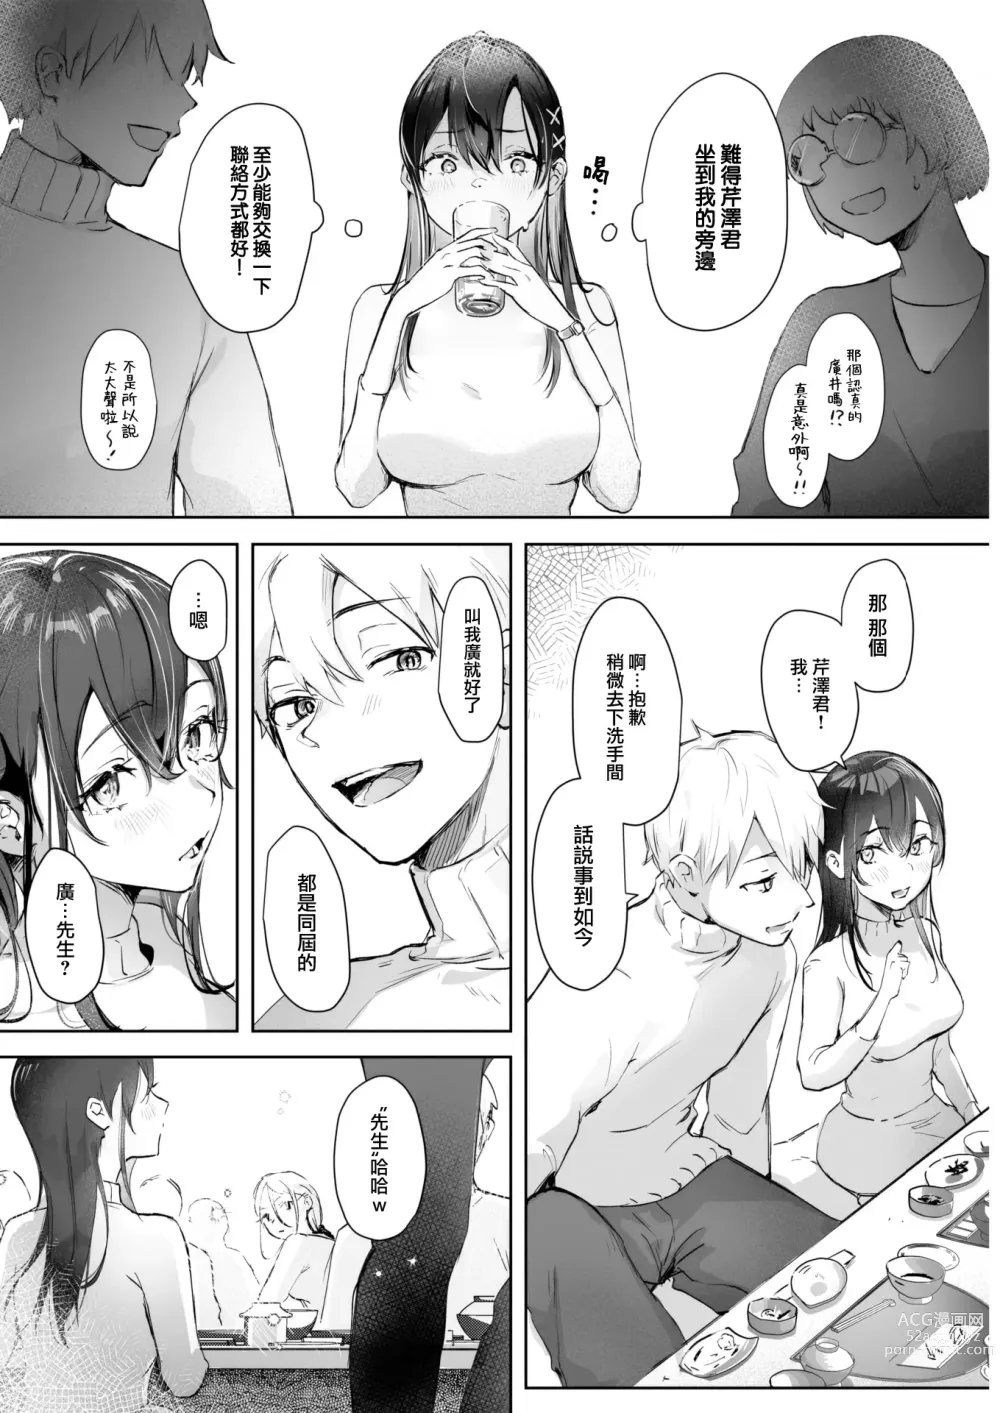 Page 3 of manga Koibumi Confusion